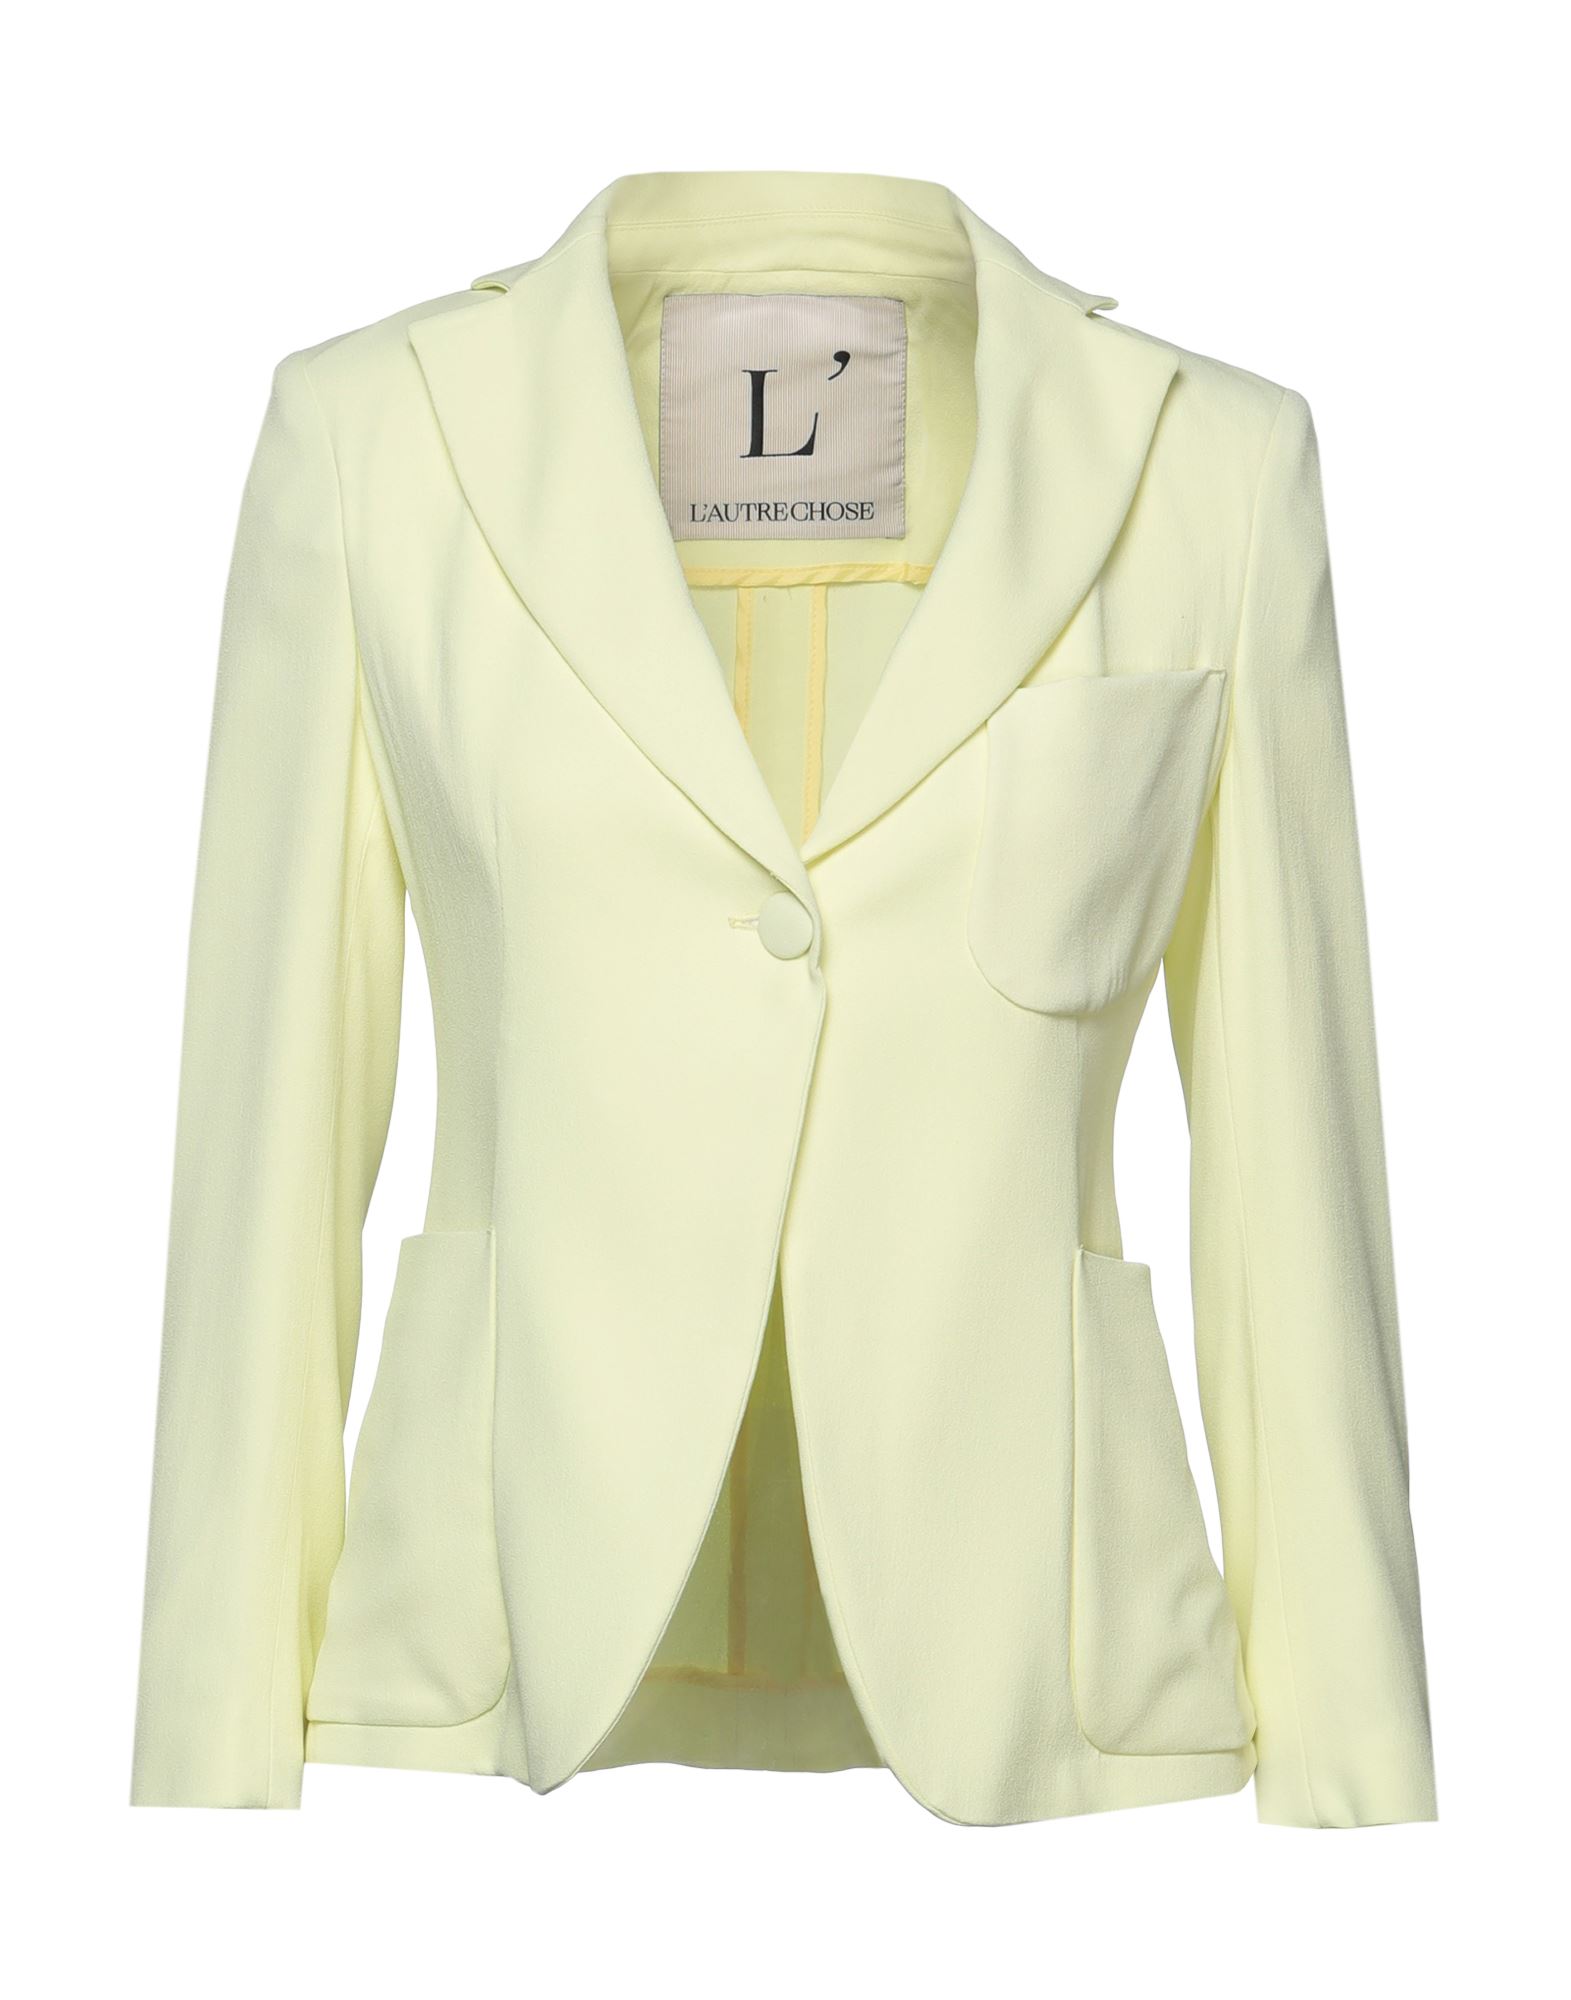 L'autre Chose L' Autre Chose Woman Suit Jacket Light Yellow Size 8 Acetate, Viscose